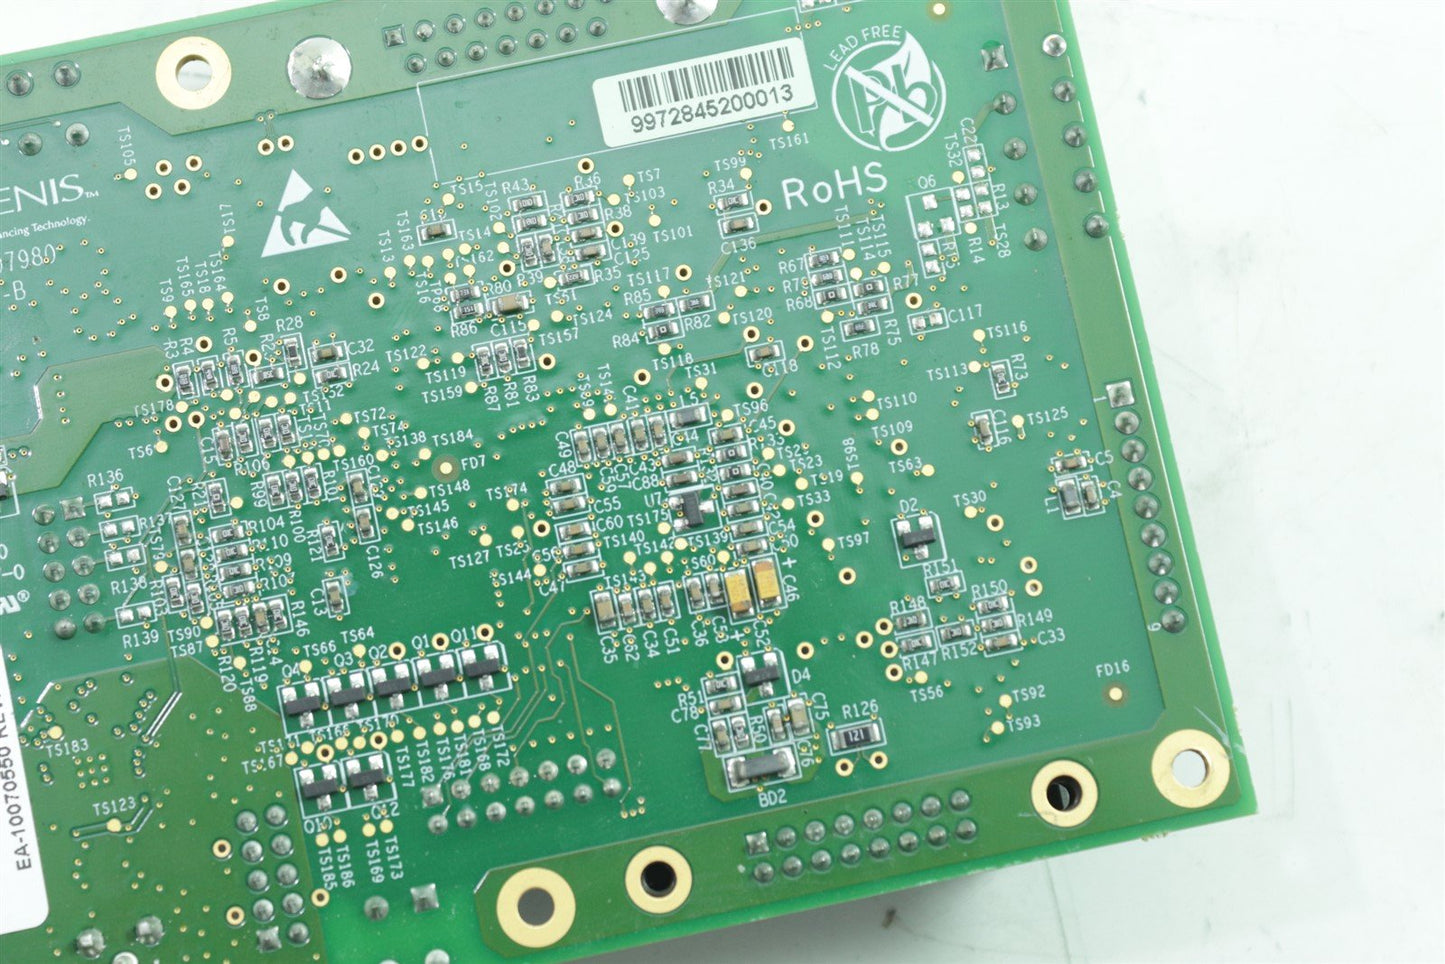 Lumenis ResurFX SA Controller Board EA-10070550 REV A